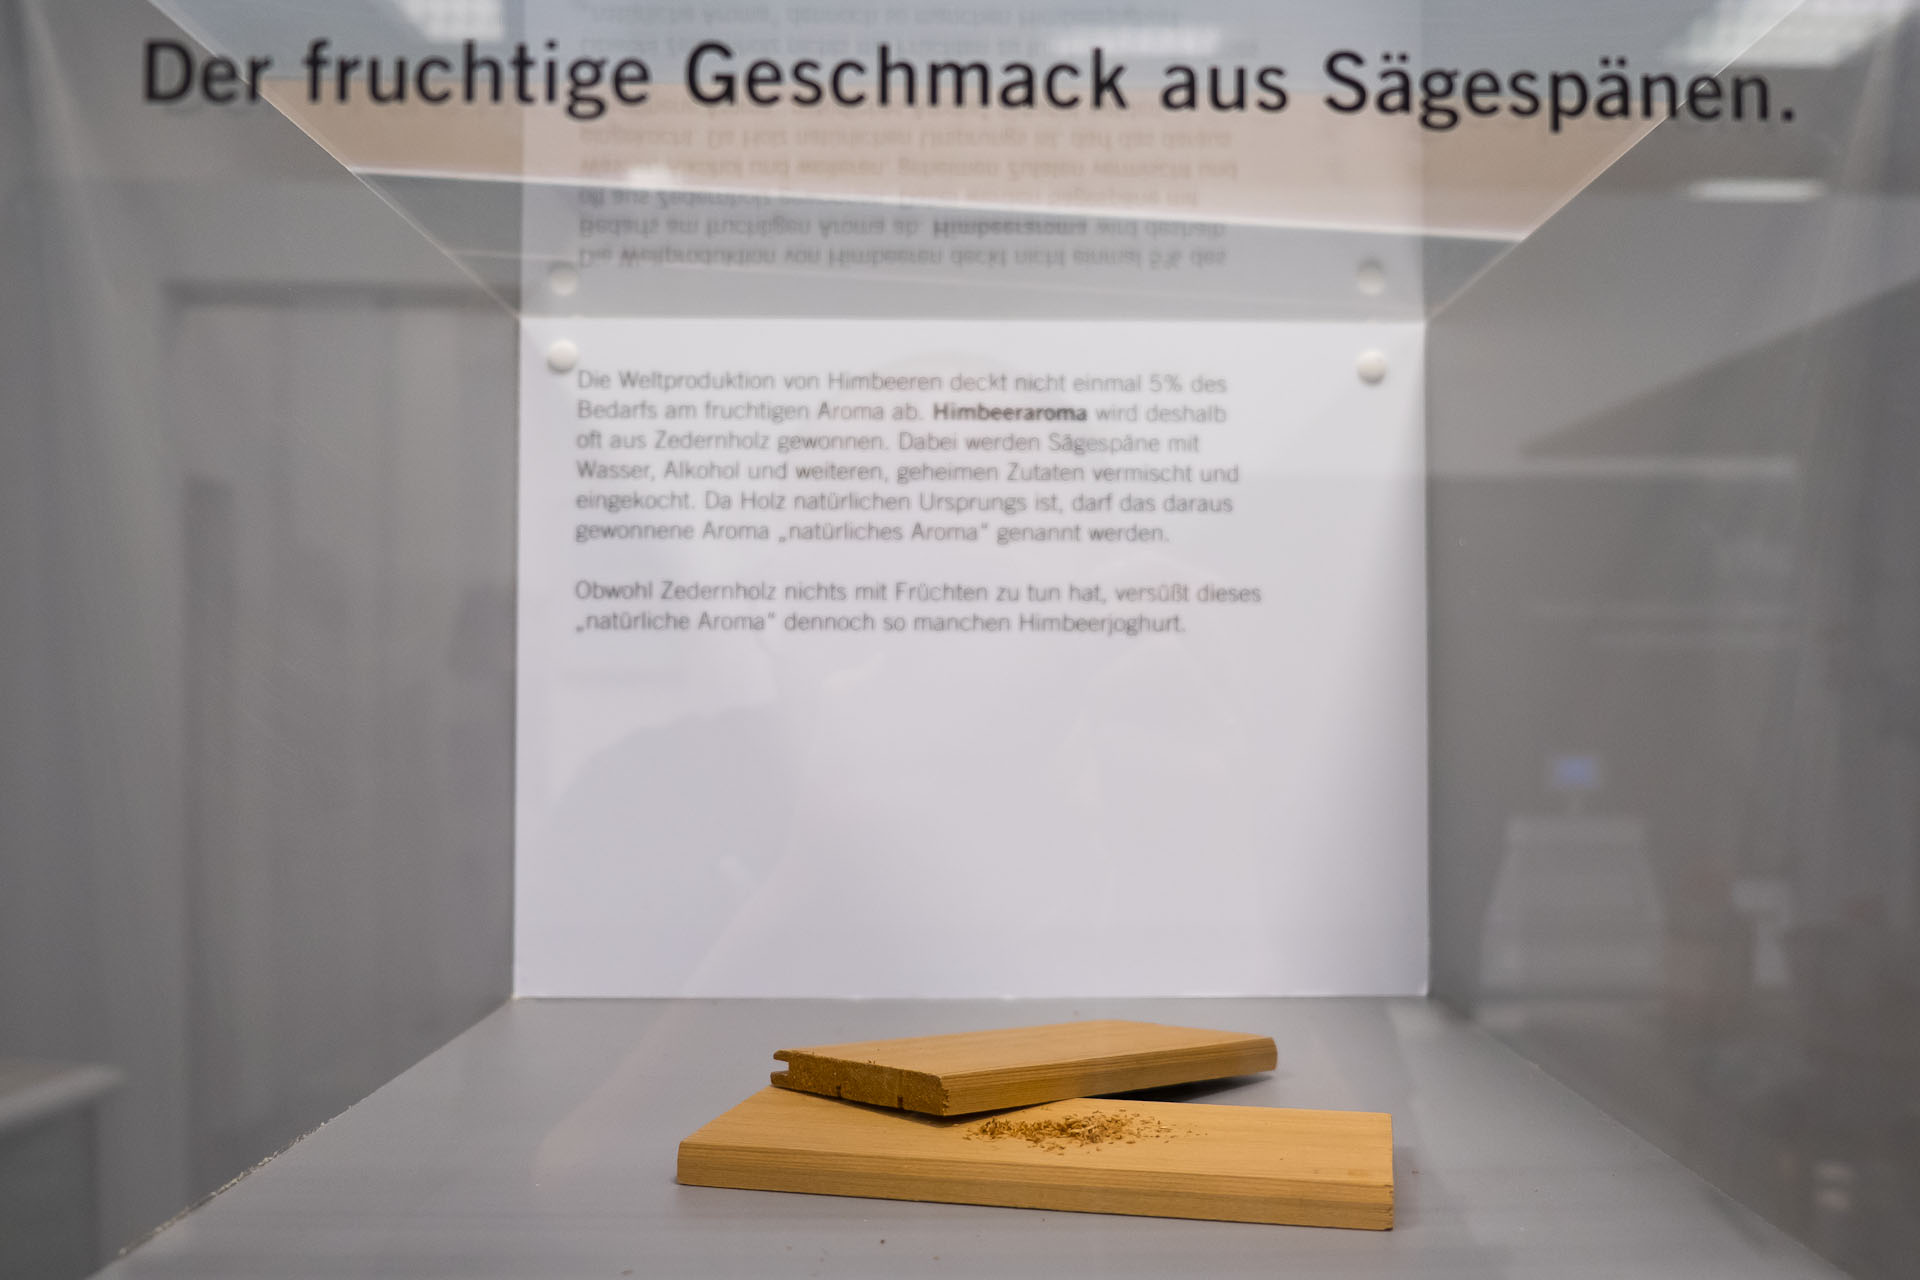 Deutsches Zusatzstoffmuseum